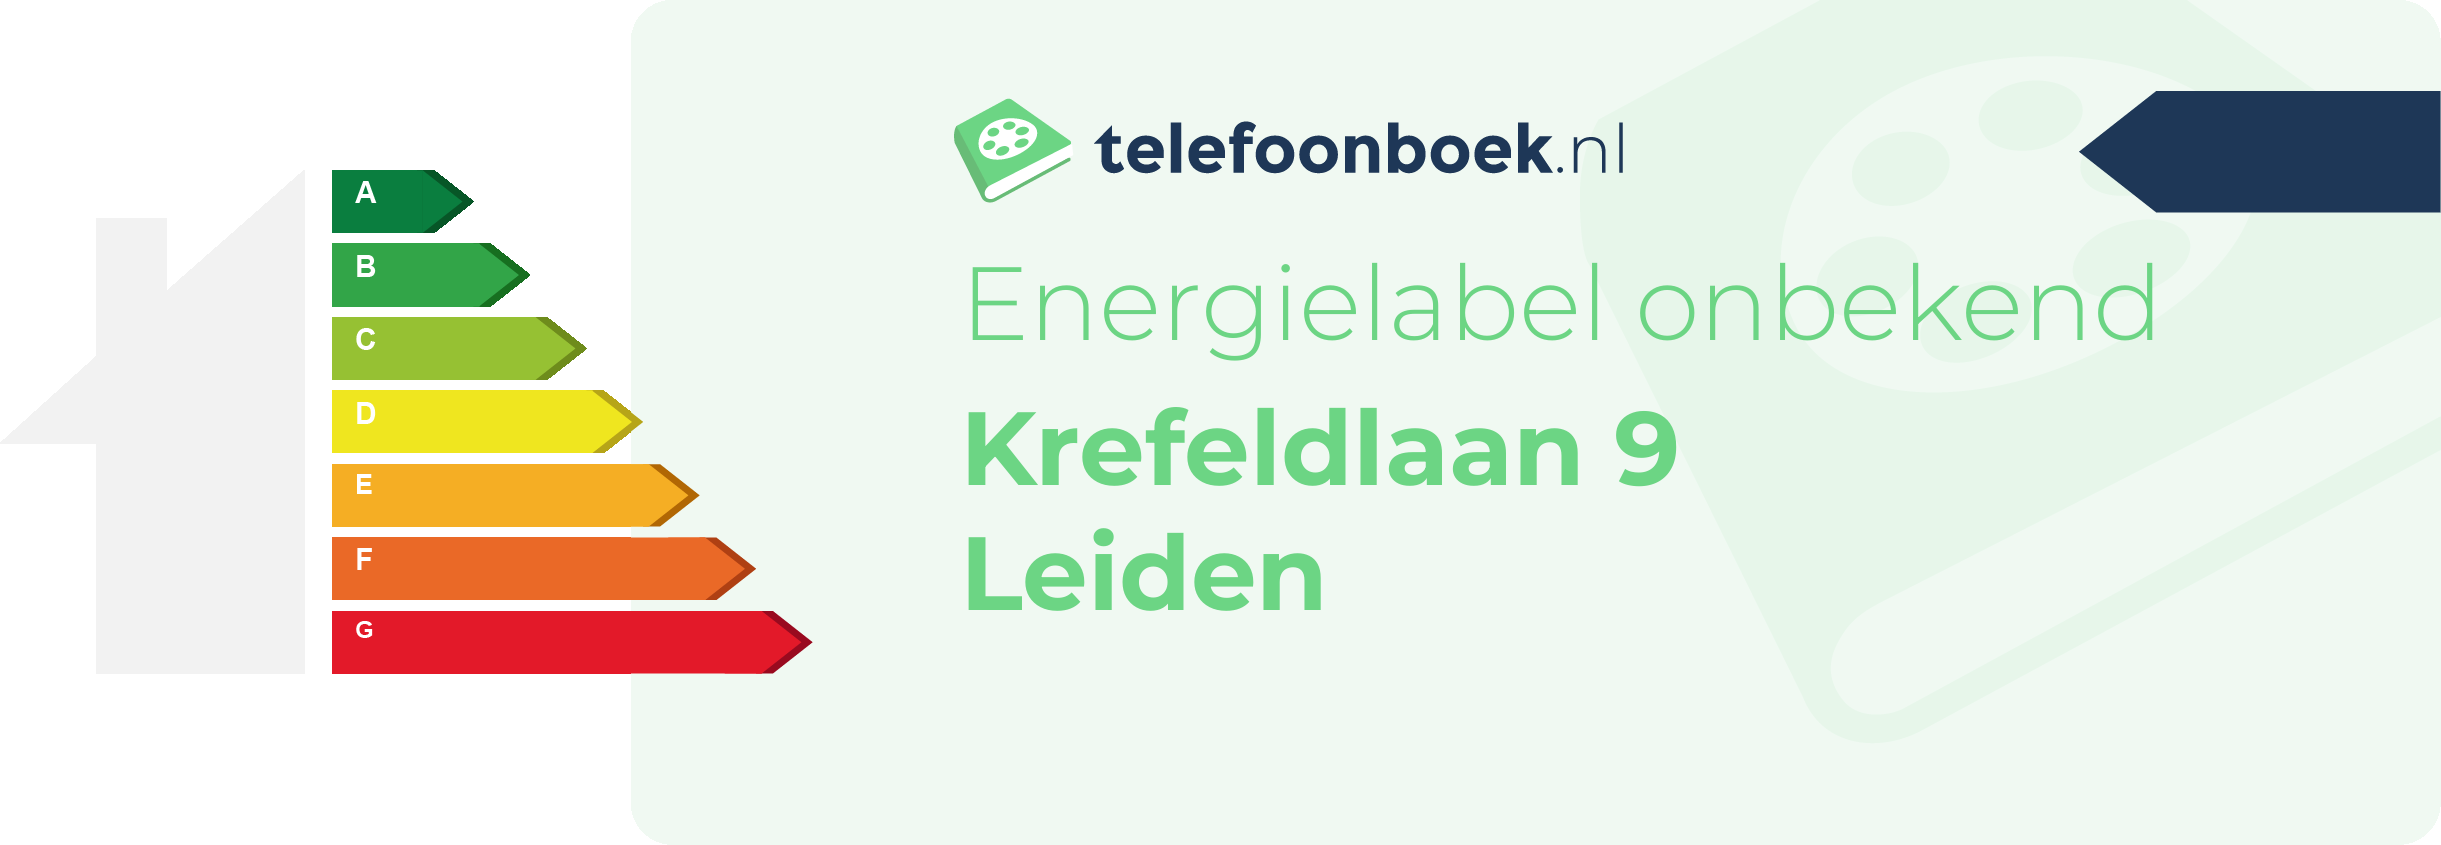 Energielabel Krefeldlaan 9 Leiden